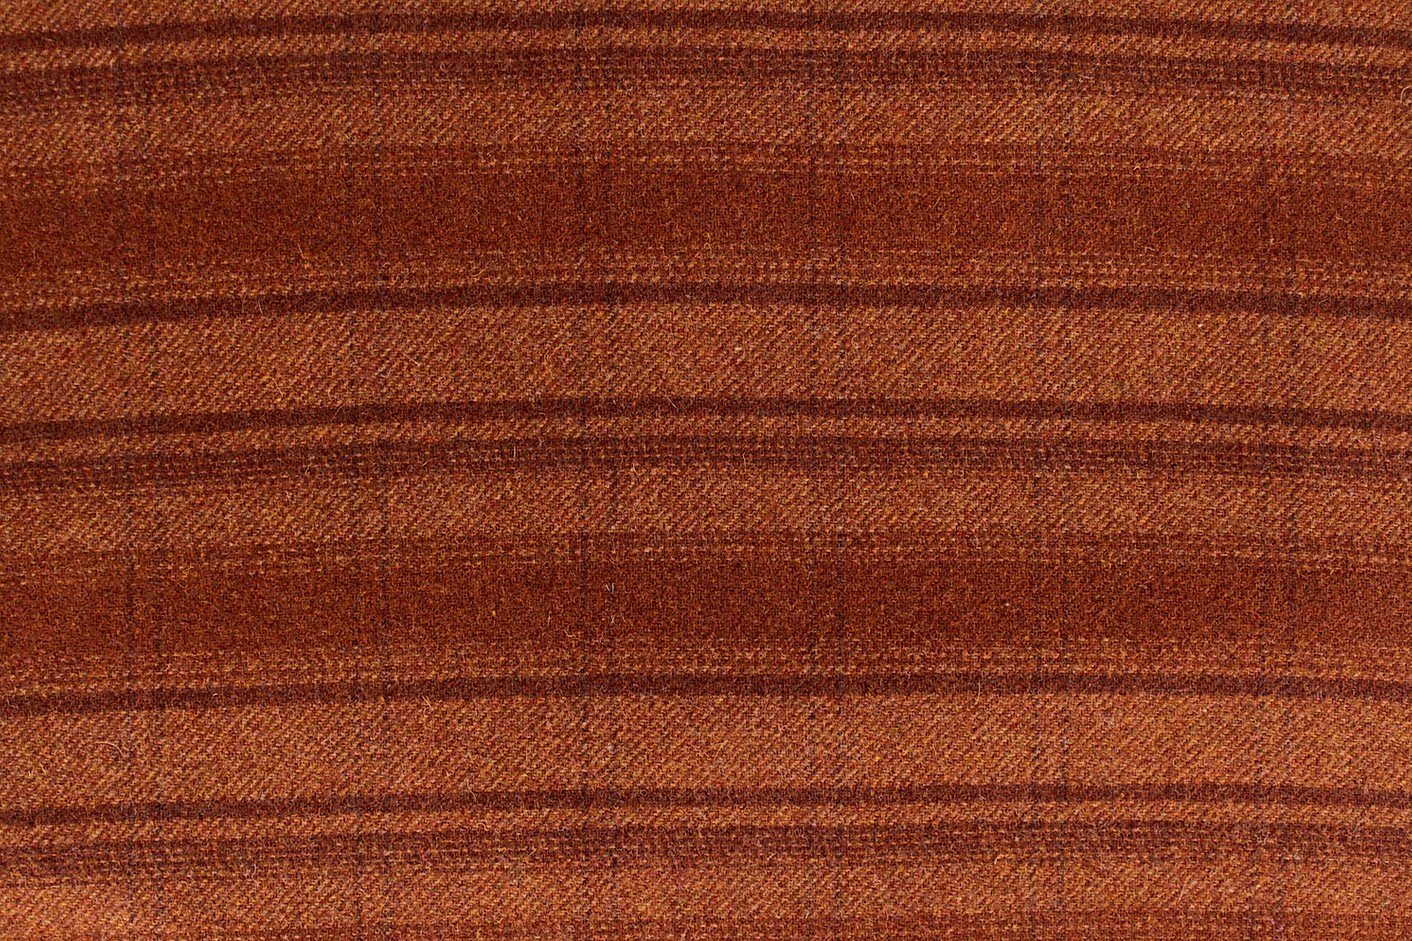 100% Wool Fabric - Orange Peel